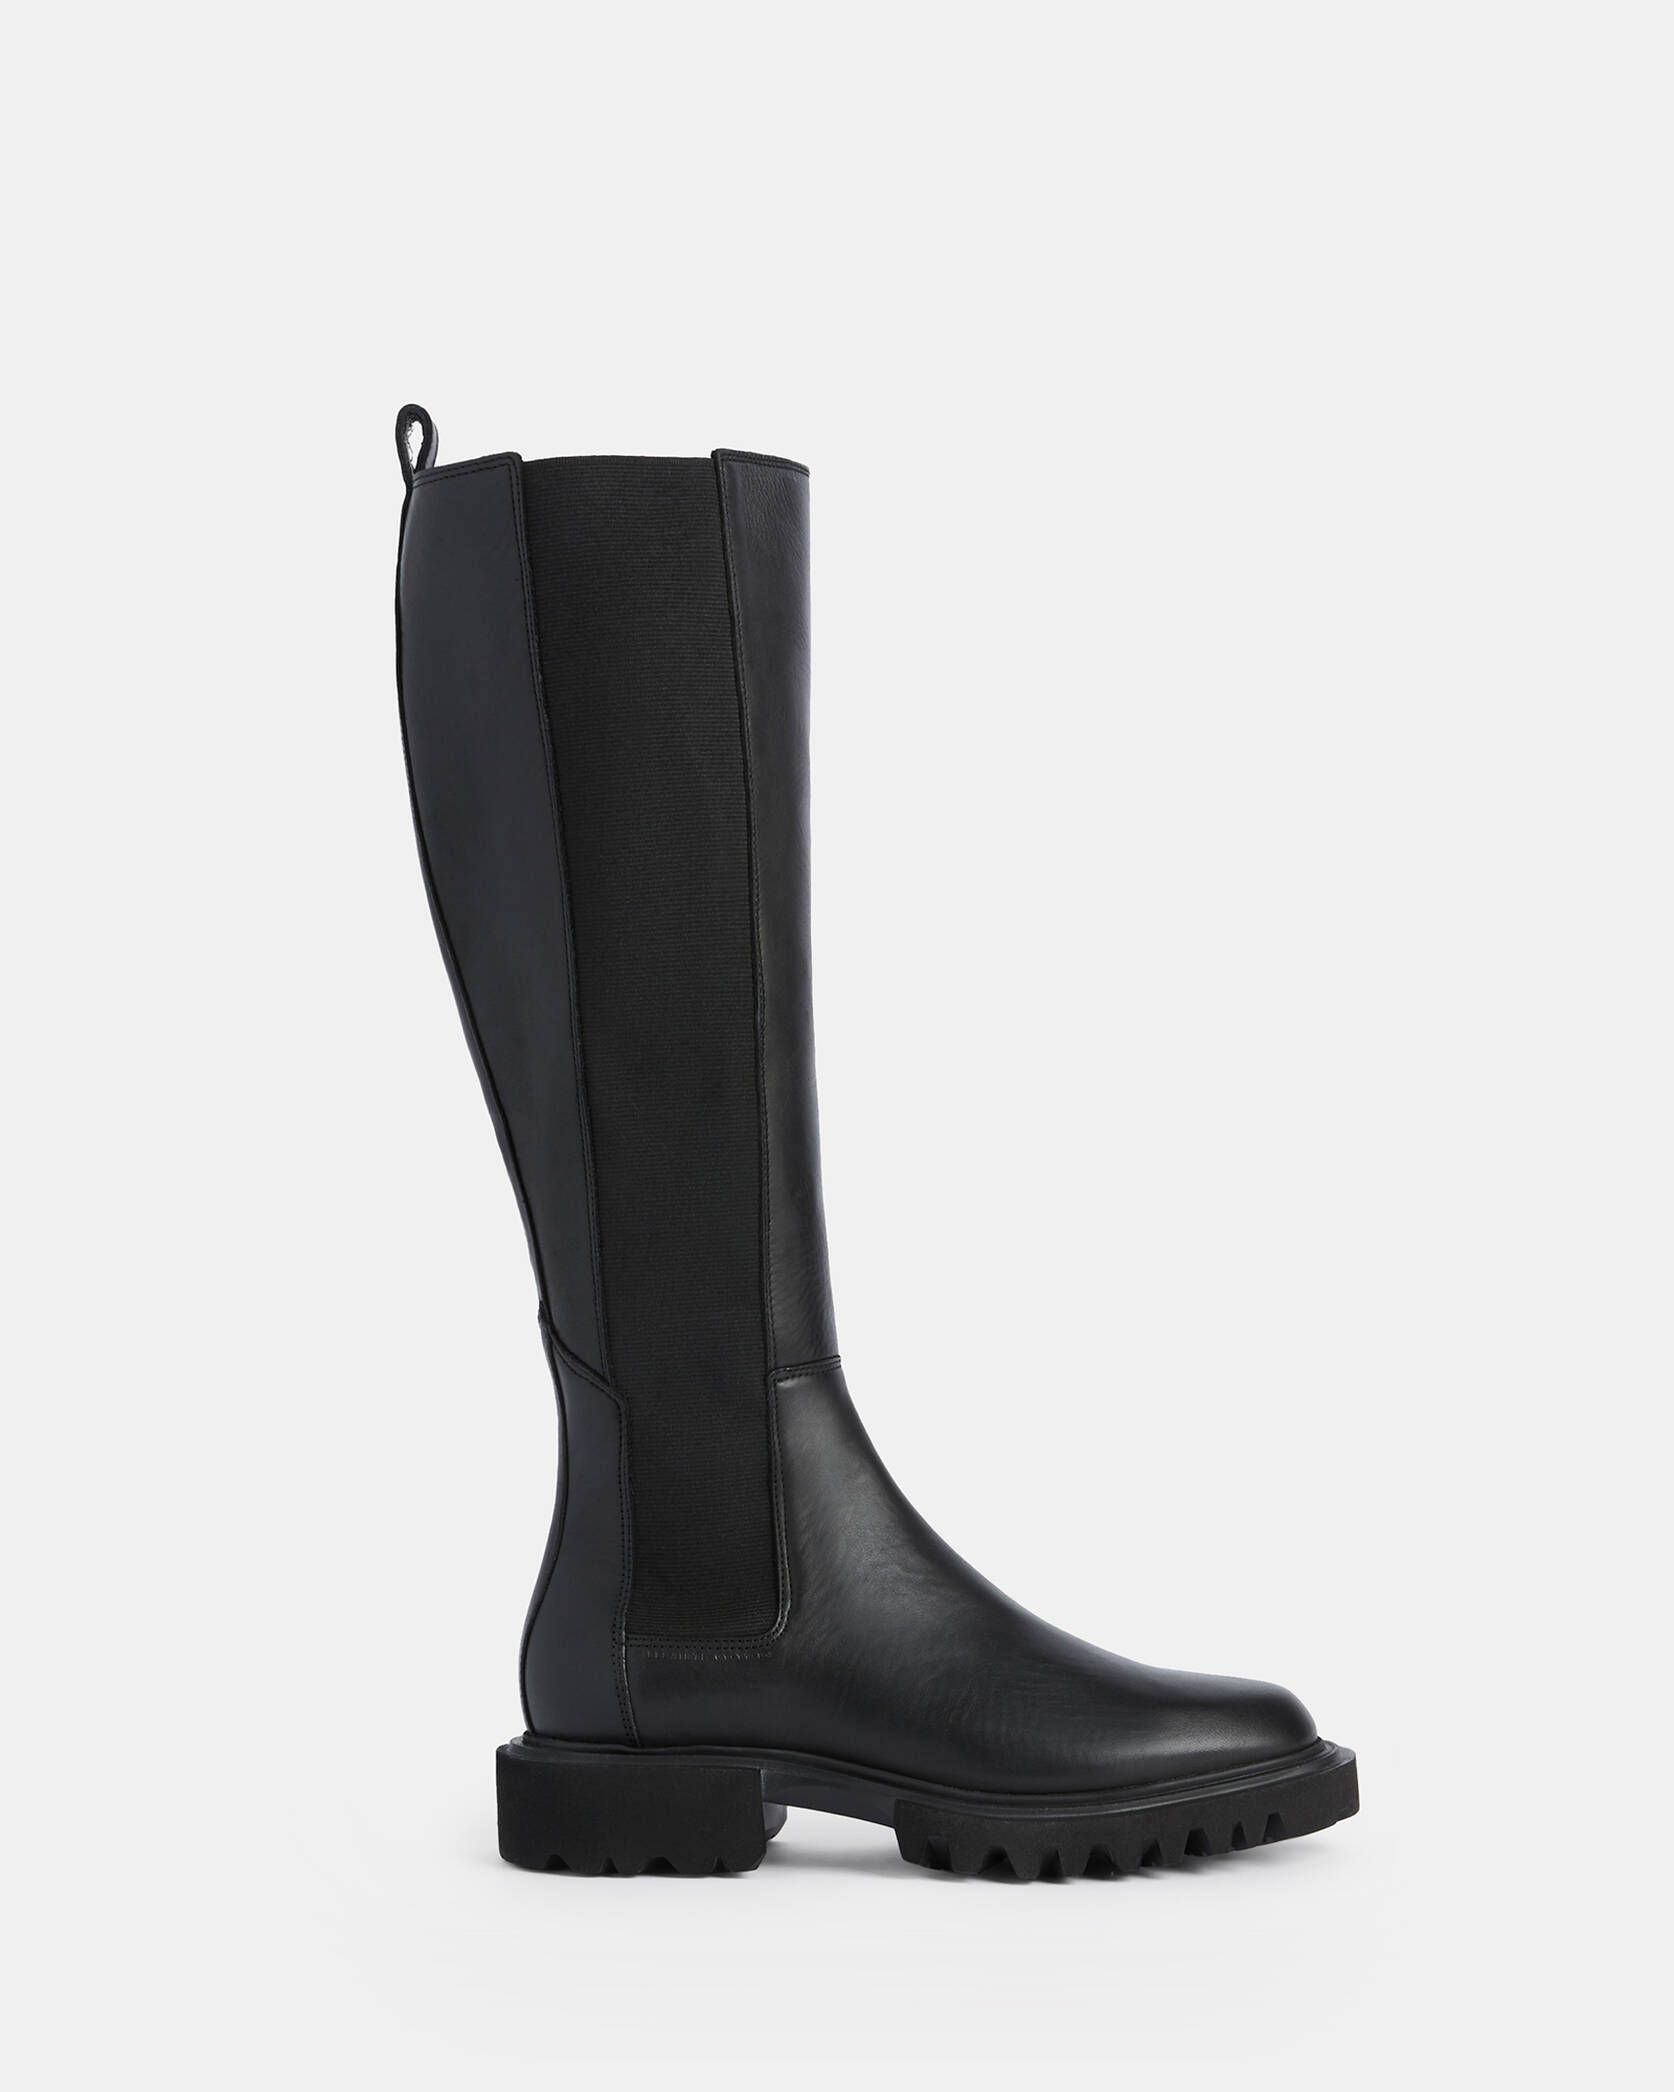 Maeve Leather Boots Black | ALLSAINTS | AllSaints UK